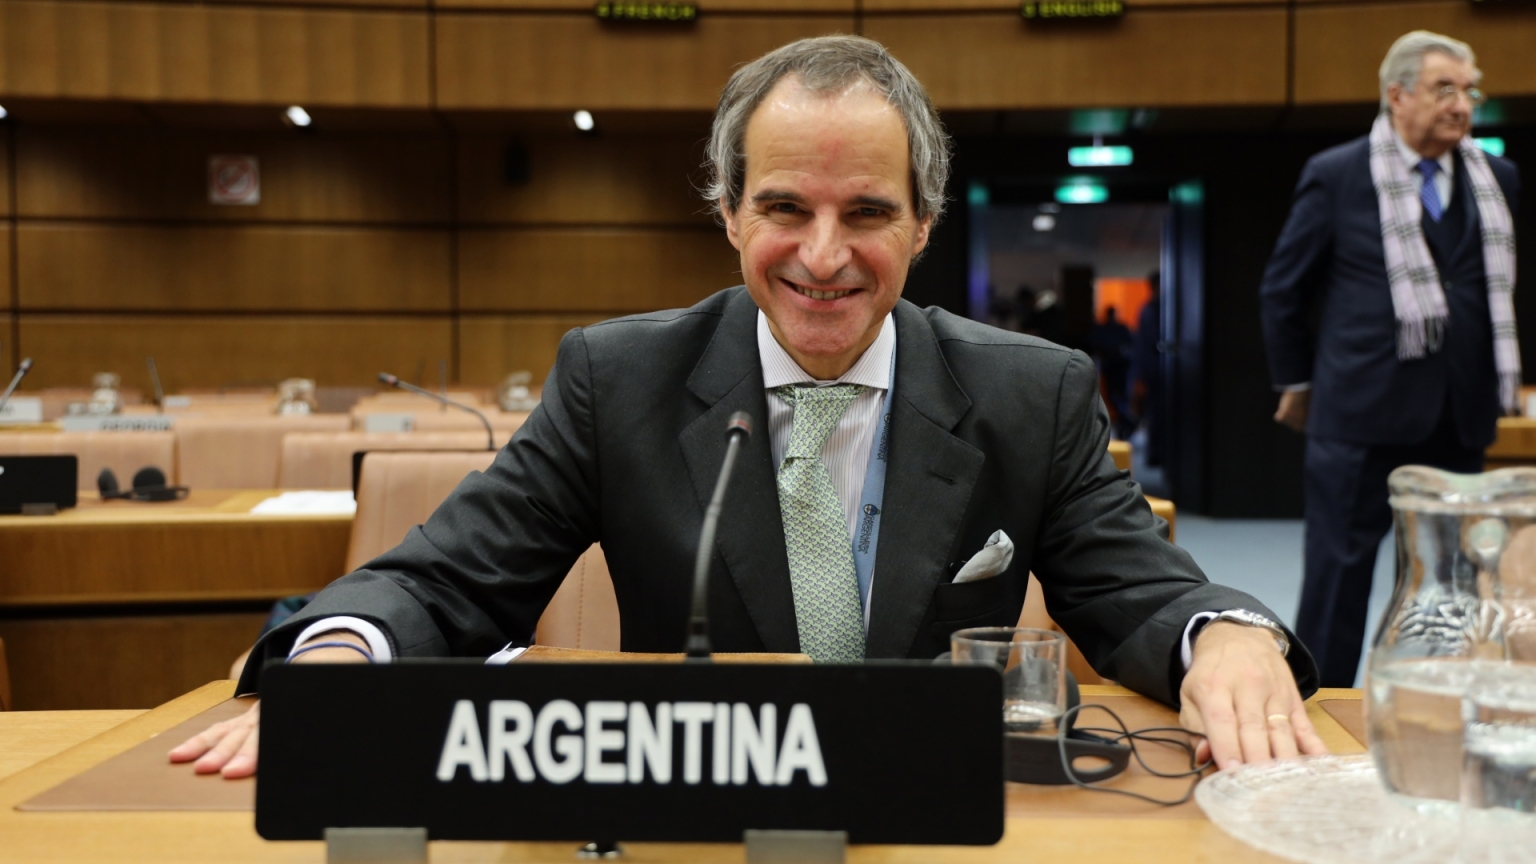 Der argentinische Diplomat Rafael Mariano Grossi soll die Nachfolge des verstorbenen IAEO-Generaldirektors Yukiya Amano übernehmen.